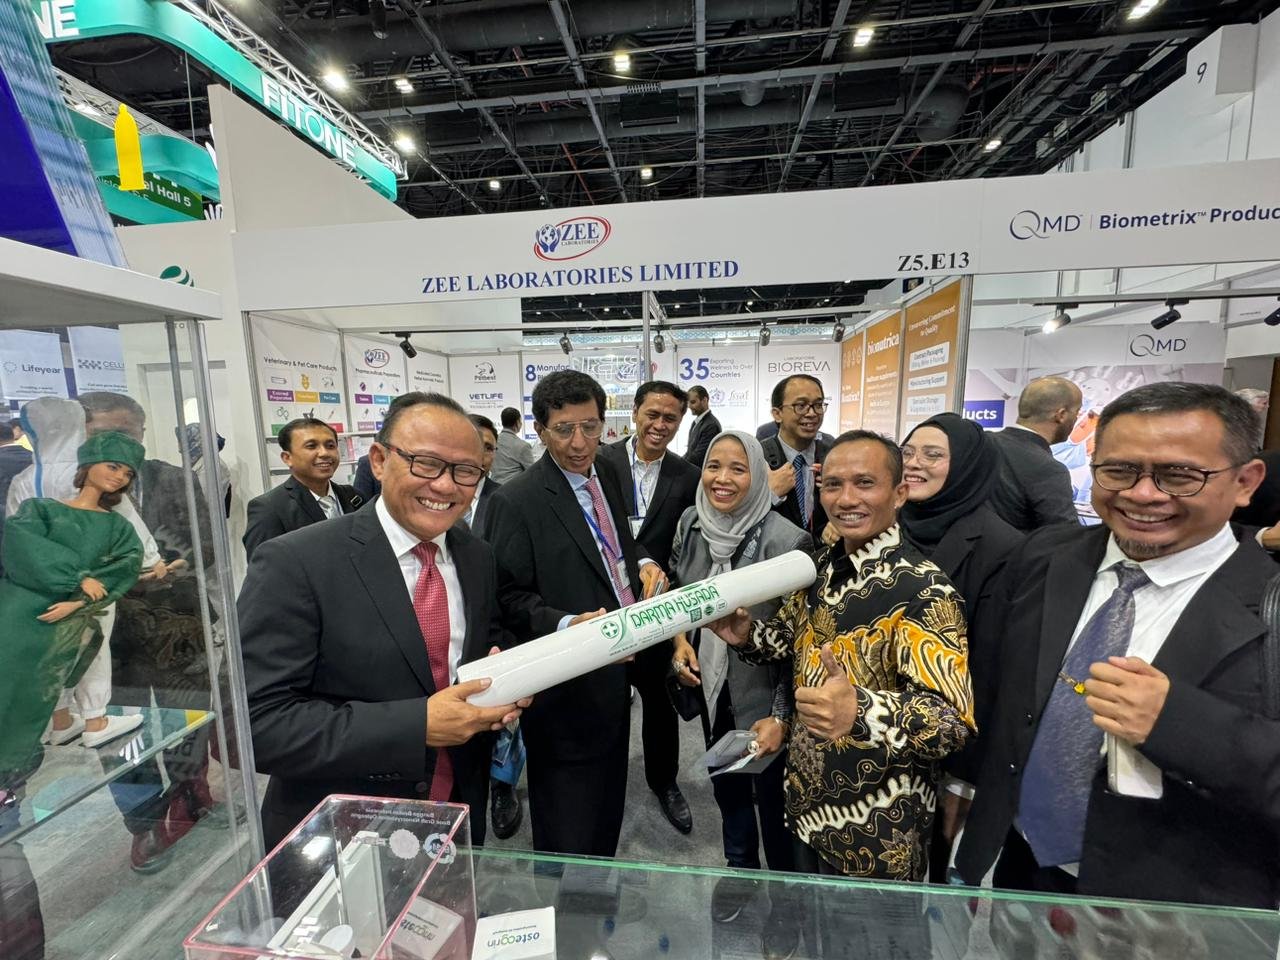 PT USM Berkah Indonesia ikuti Pameran Internasional Arab Health di Dubai